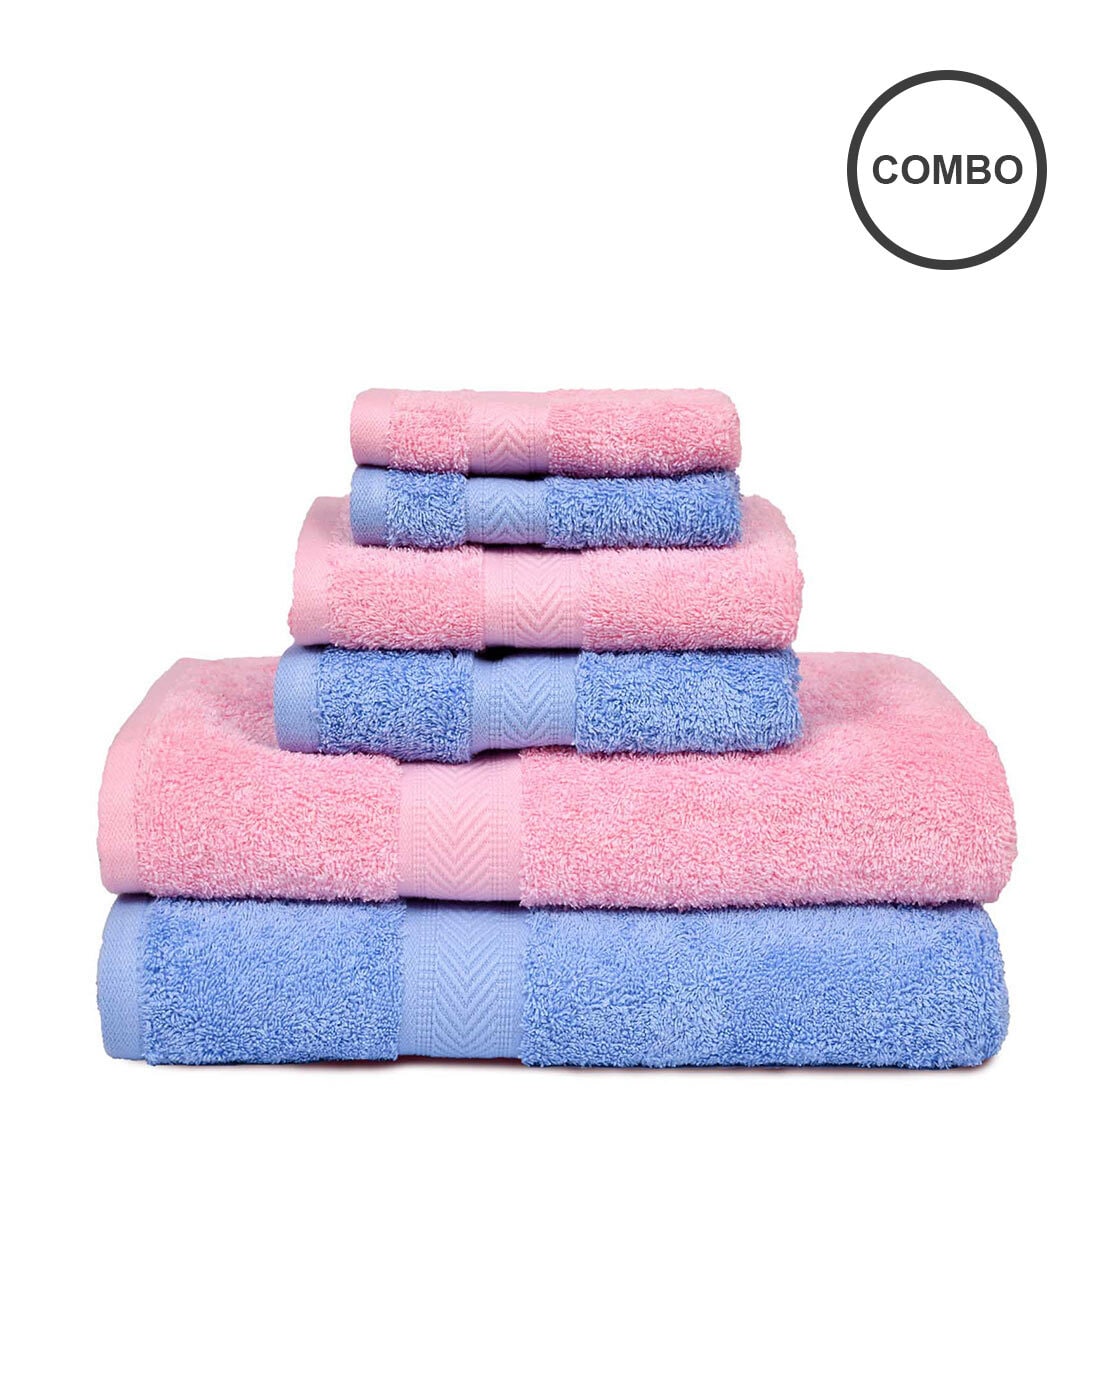 ClearloveWL Bath towel, 3pcs Cotton Towel Set +1 Bath Towels Bathroom Set  For Family Guest Bathrooms Gym Home Hotel Towels (Color : Multicolor)